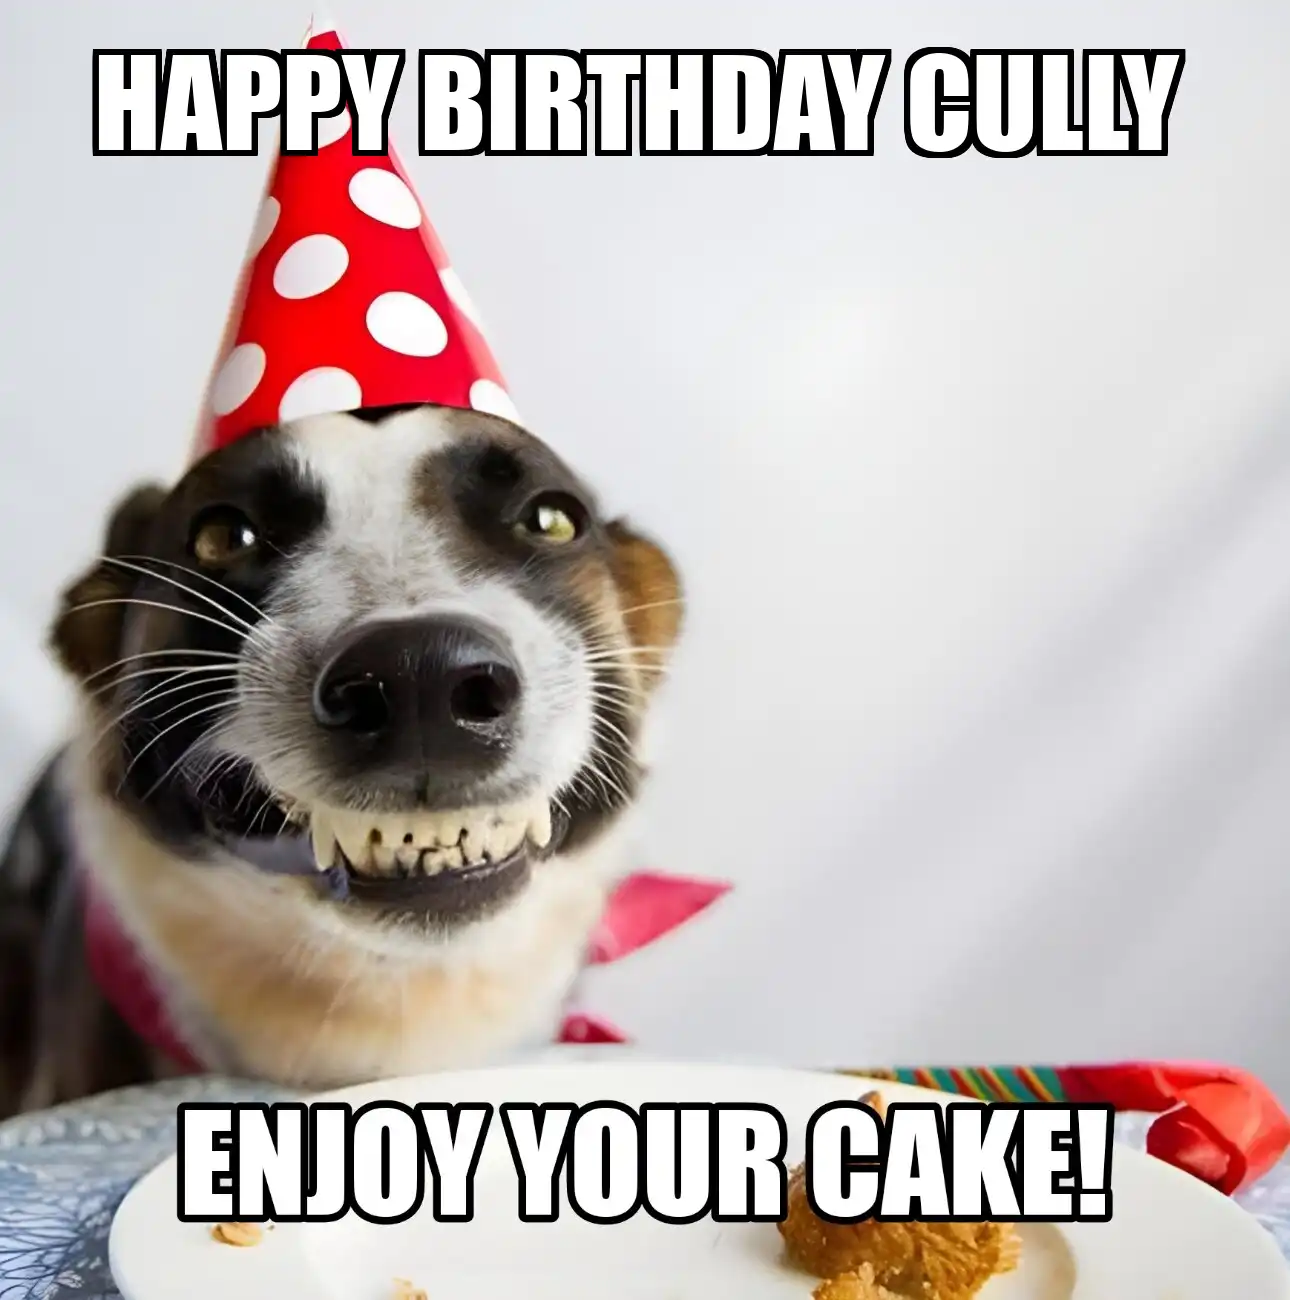 Happy Birthday Cully Enjoy Your Cake Dog Meme